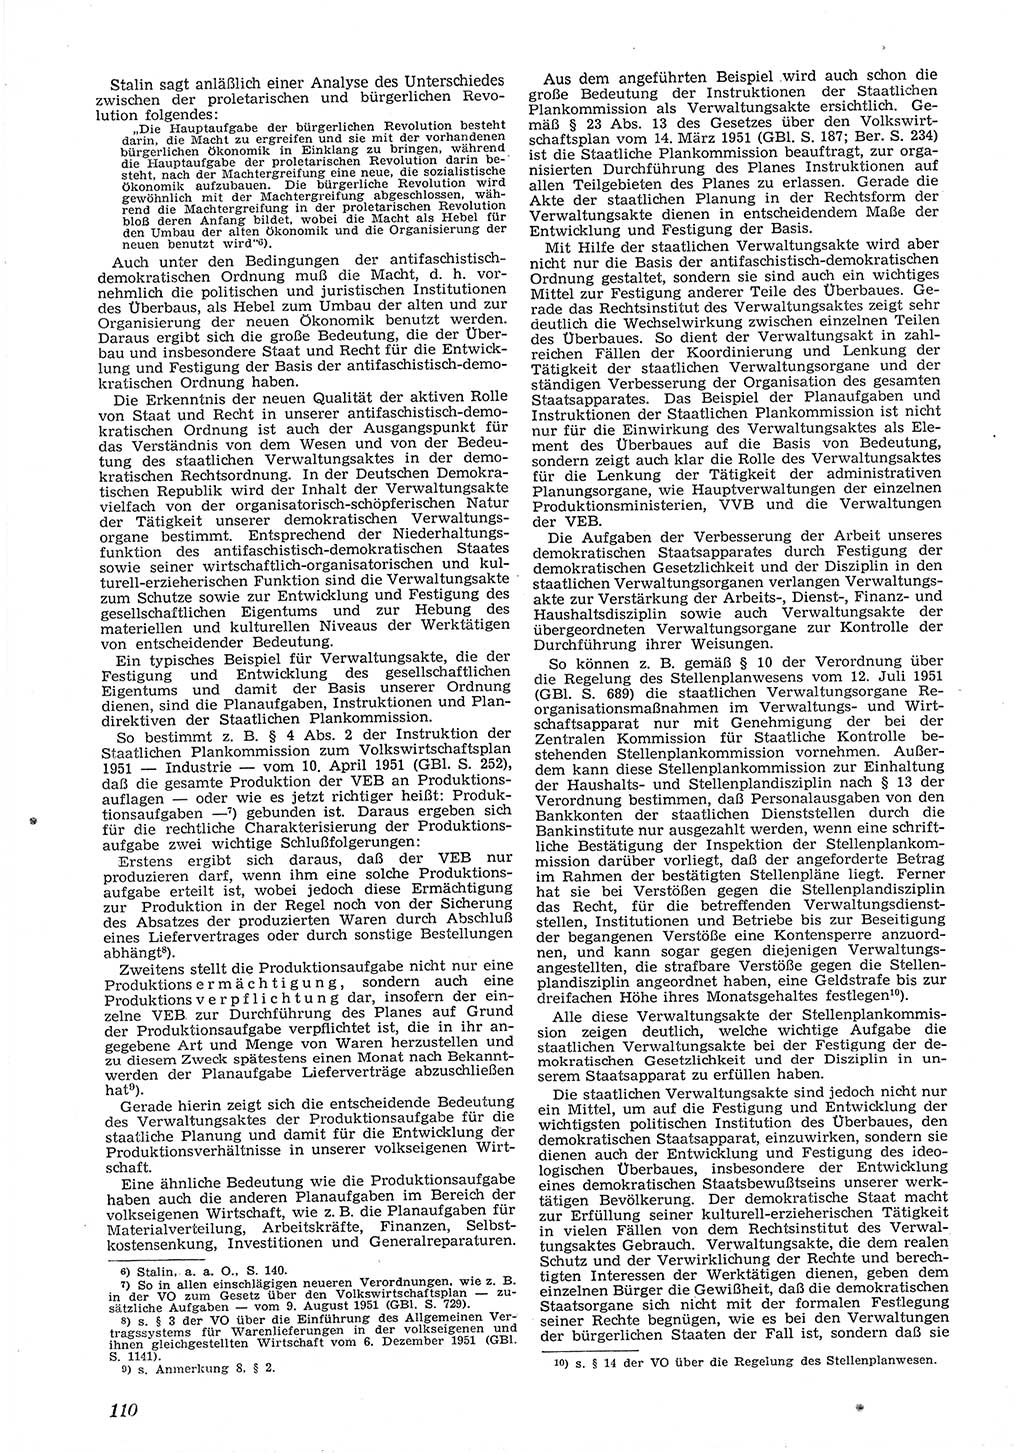 Neue Justiz (NJ), Zeitschrift für Recht und Rechtswissenschaft [Deutsche Demokratische Republik (DDR)], 6. Jahrgang 1952, Seite 110 (NJ DDR 1952, S. 110)